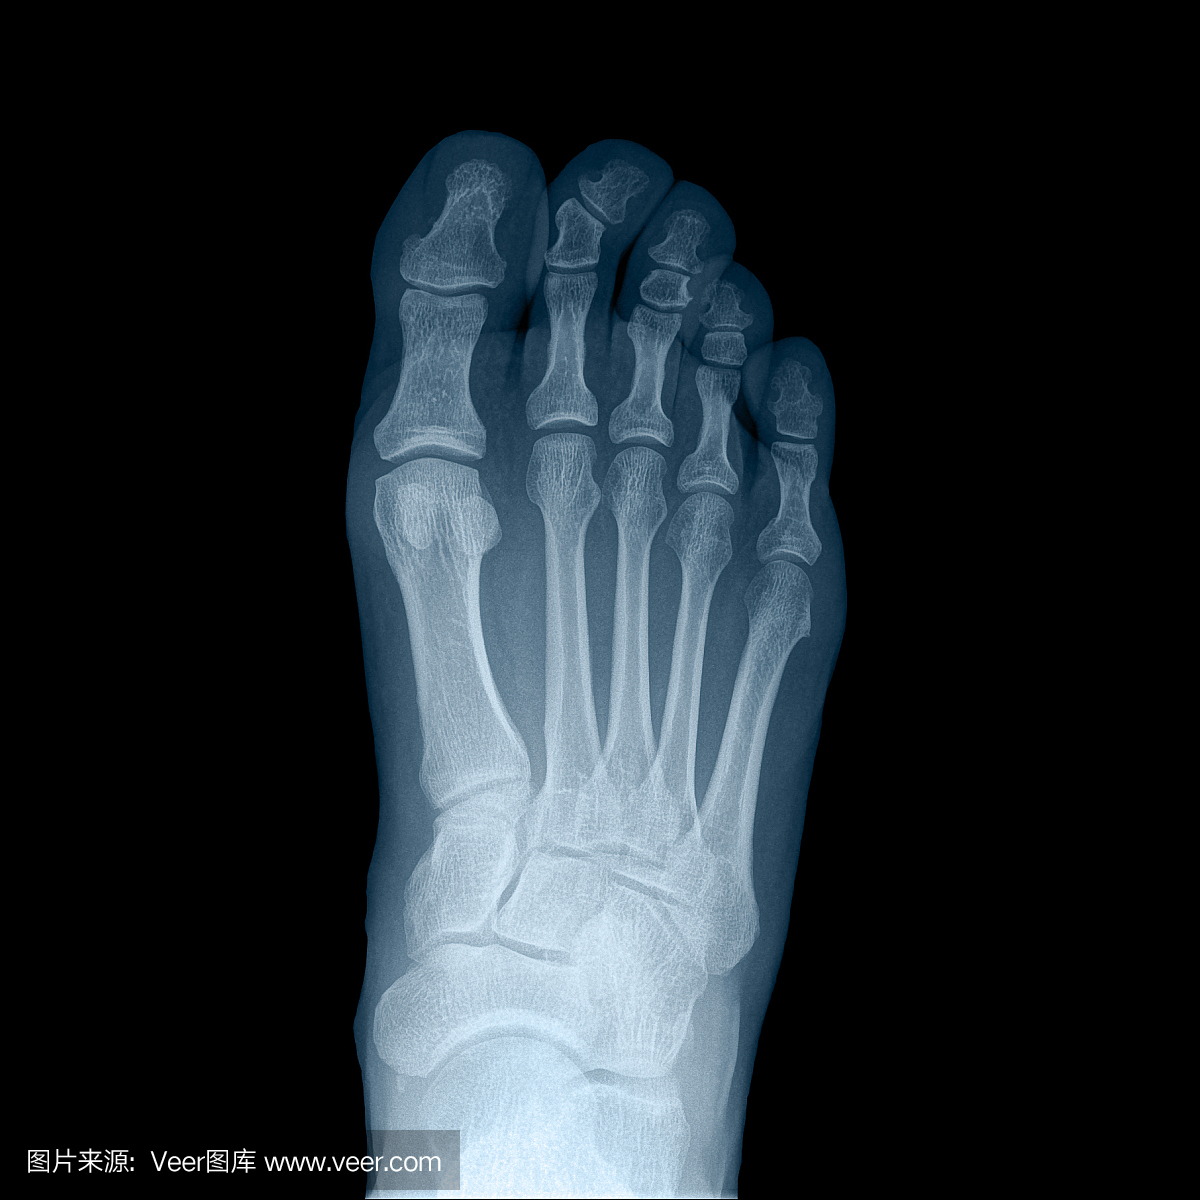 脚掌x光骨骼图片_正常的足部x光片图_微信公众号文章